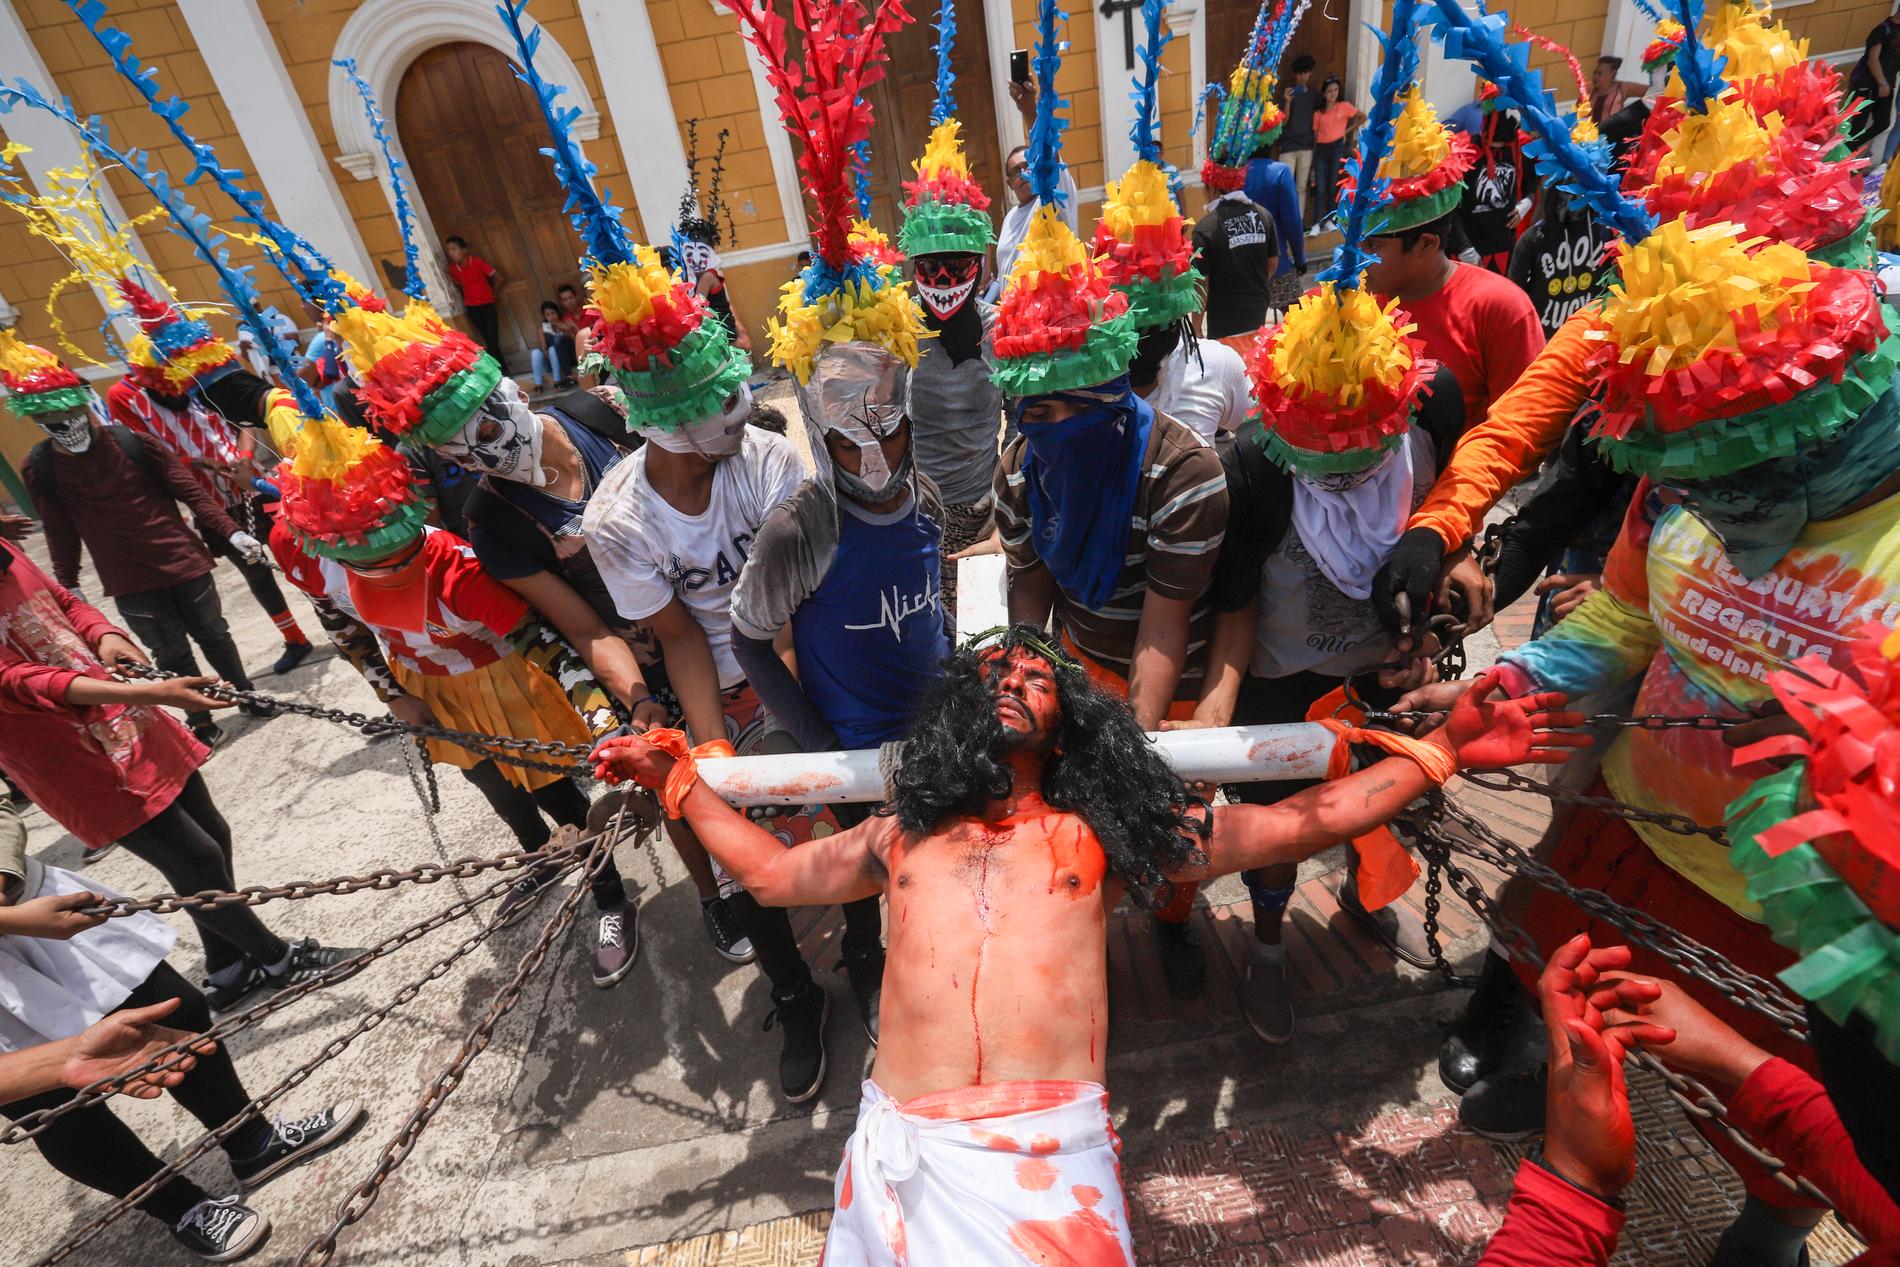 Påskfirandet pågick som vanligt på många håll i Nicaragua, trots coronakrisen. Bilden är tagen i staden Masatepe i fredags.